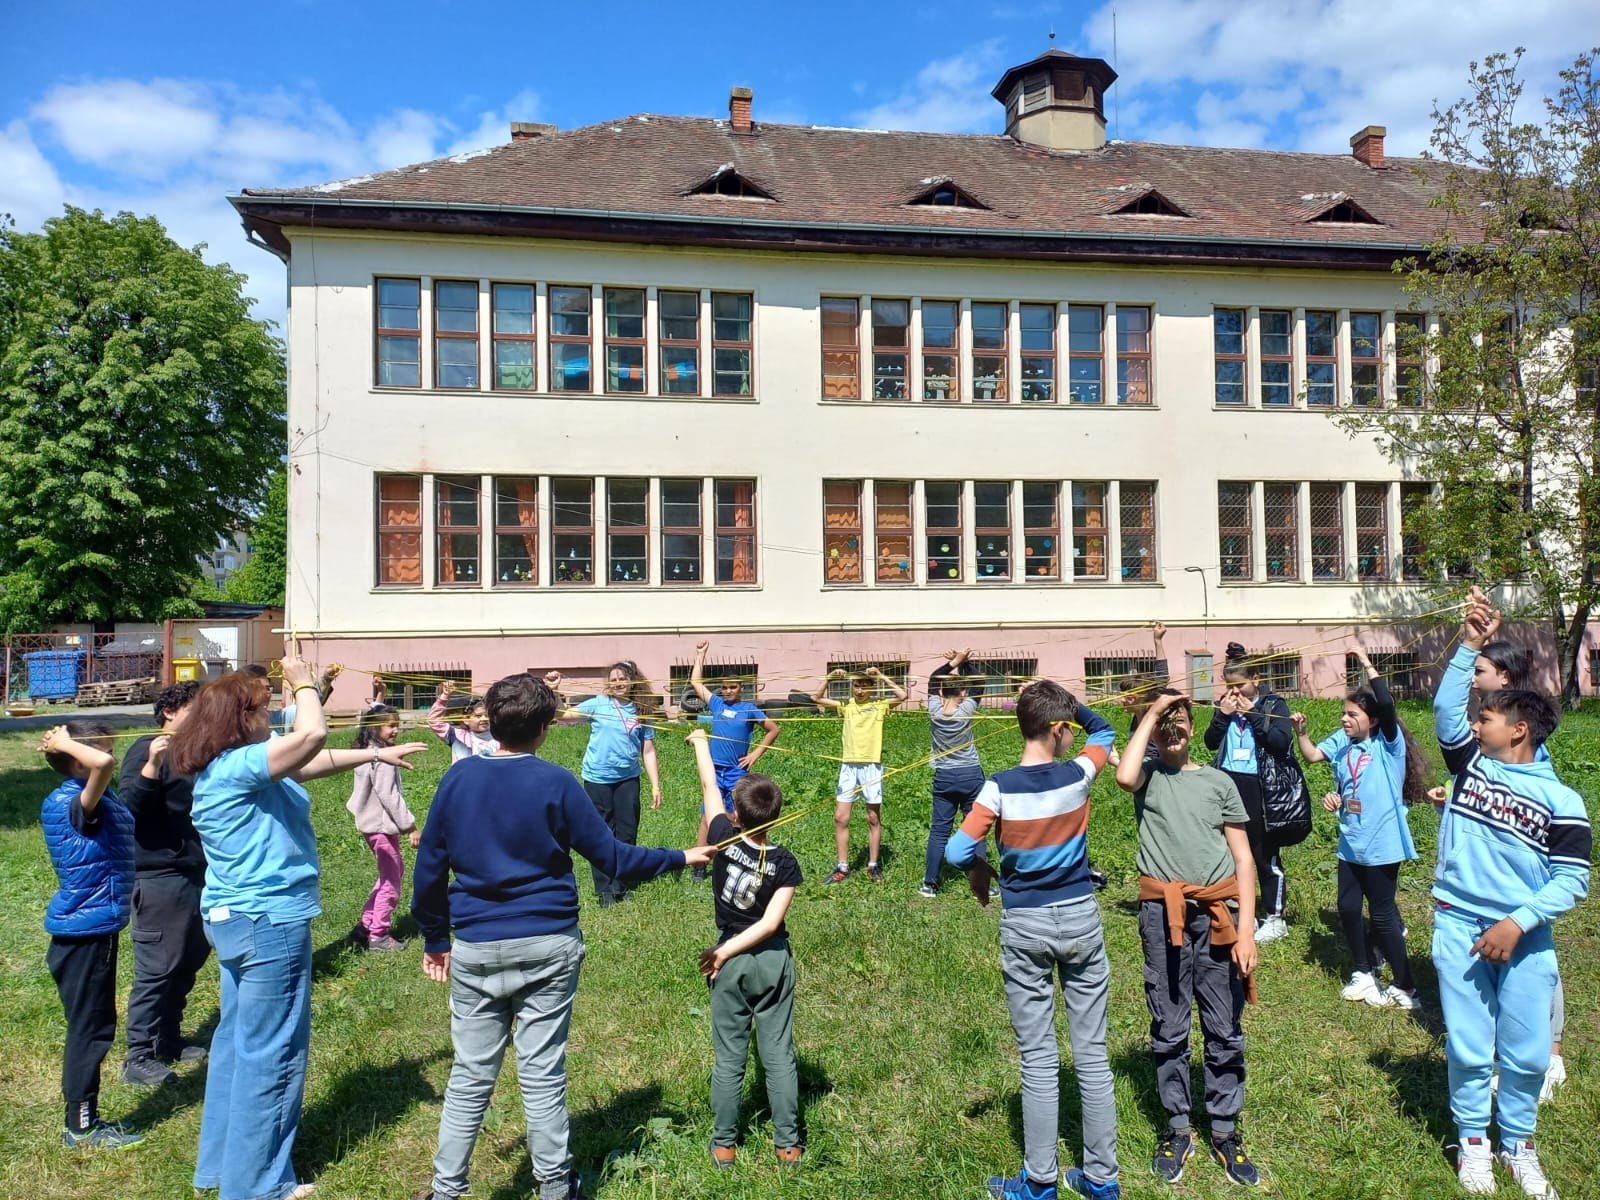 Școala Nr. 13 din Sibiu va fi renovată și reabilitată termic printr-un proiect de 9,7 milioane de lei